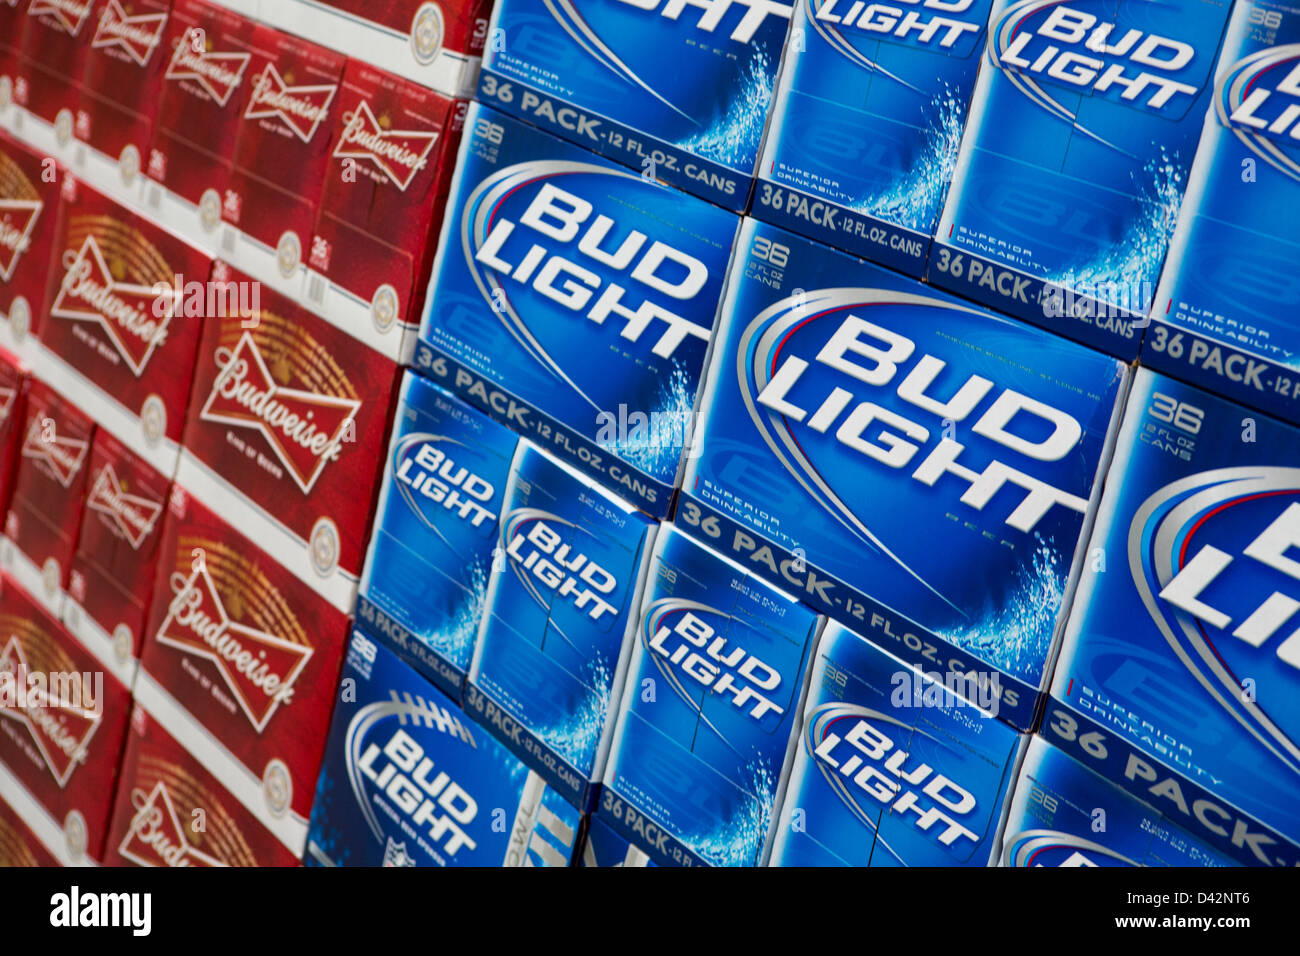 Budweiser und Bud Light Bier auf dem Display an einem Costco Wholesale Warehouse Club. Stockfoto